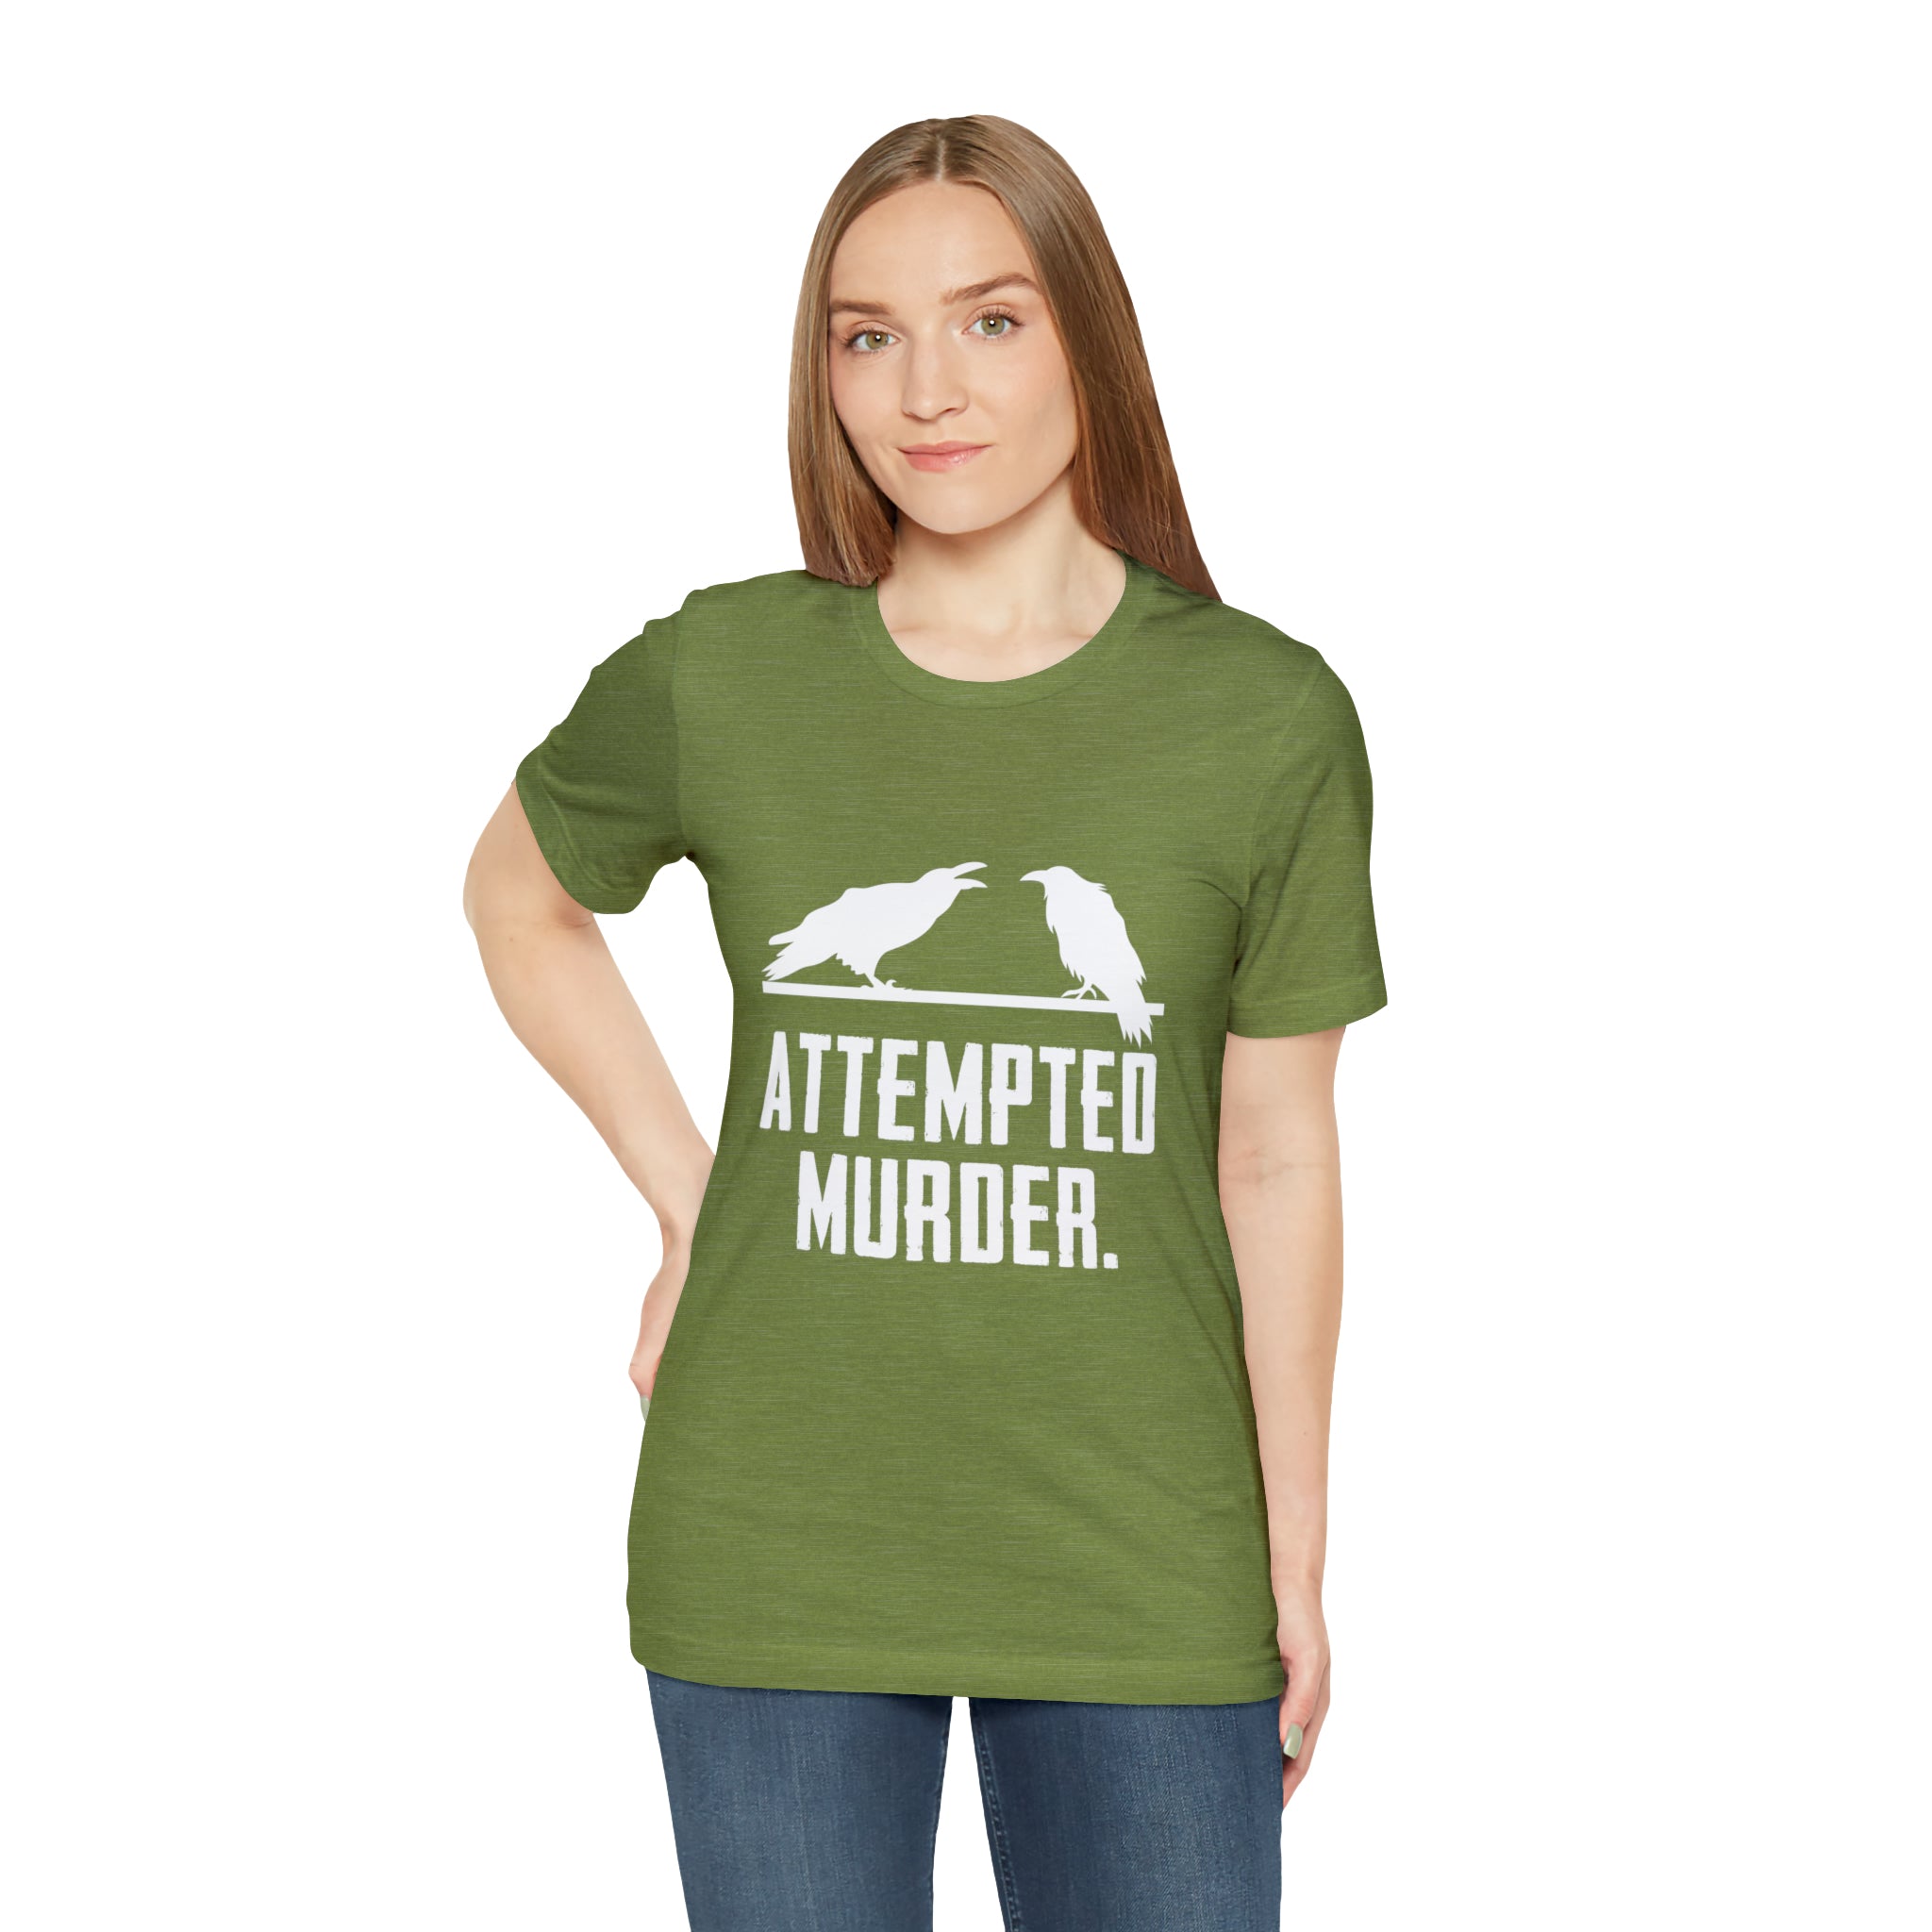 Attempted murder T-Shirt